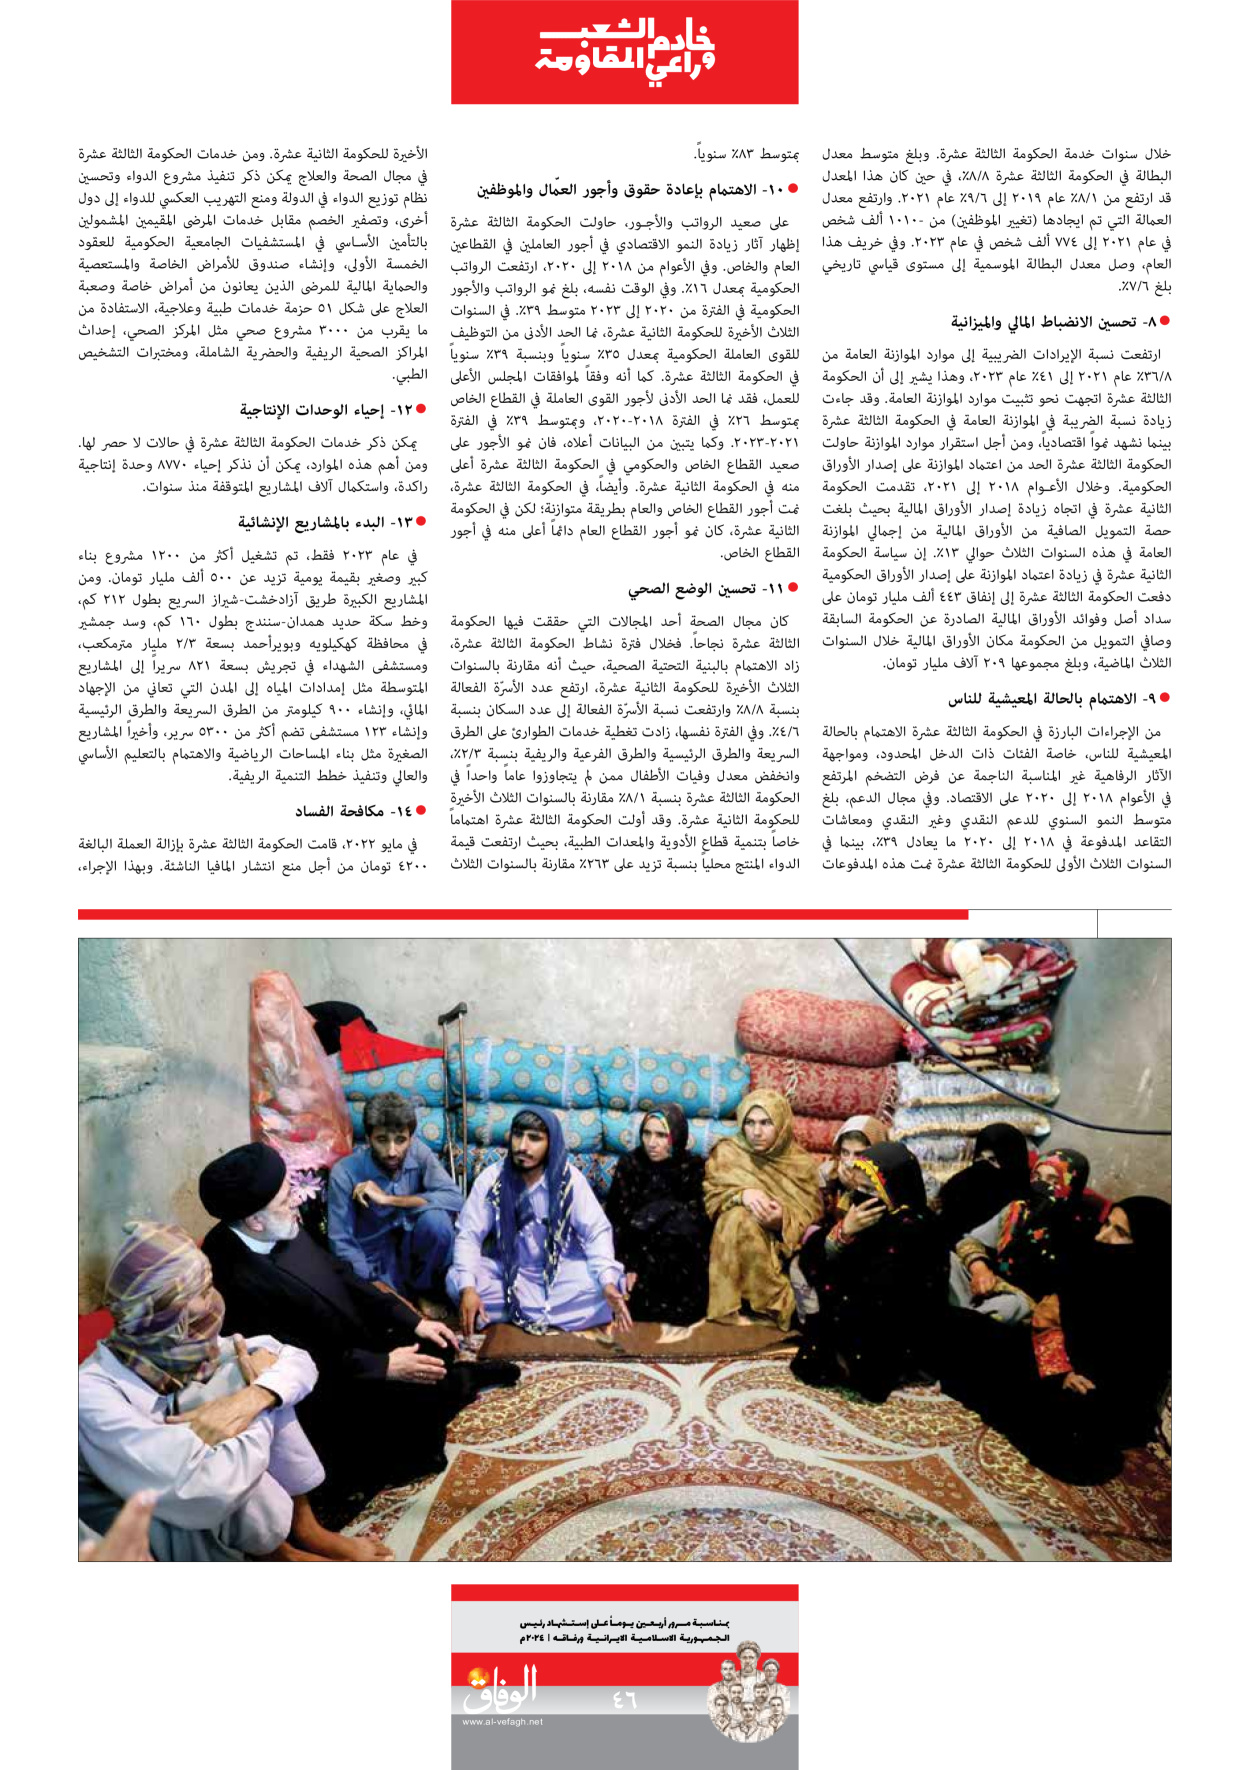 صحیفة ایران الدولیة الوفاق - ملحق ویژه نامه چهلم شهید رییسی - ٢٩ يونيو ٢٠٢٤ - الصفحة ٤٦